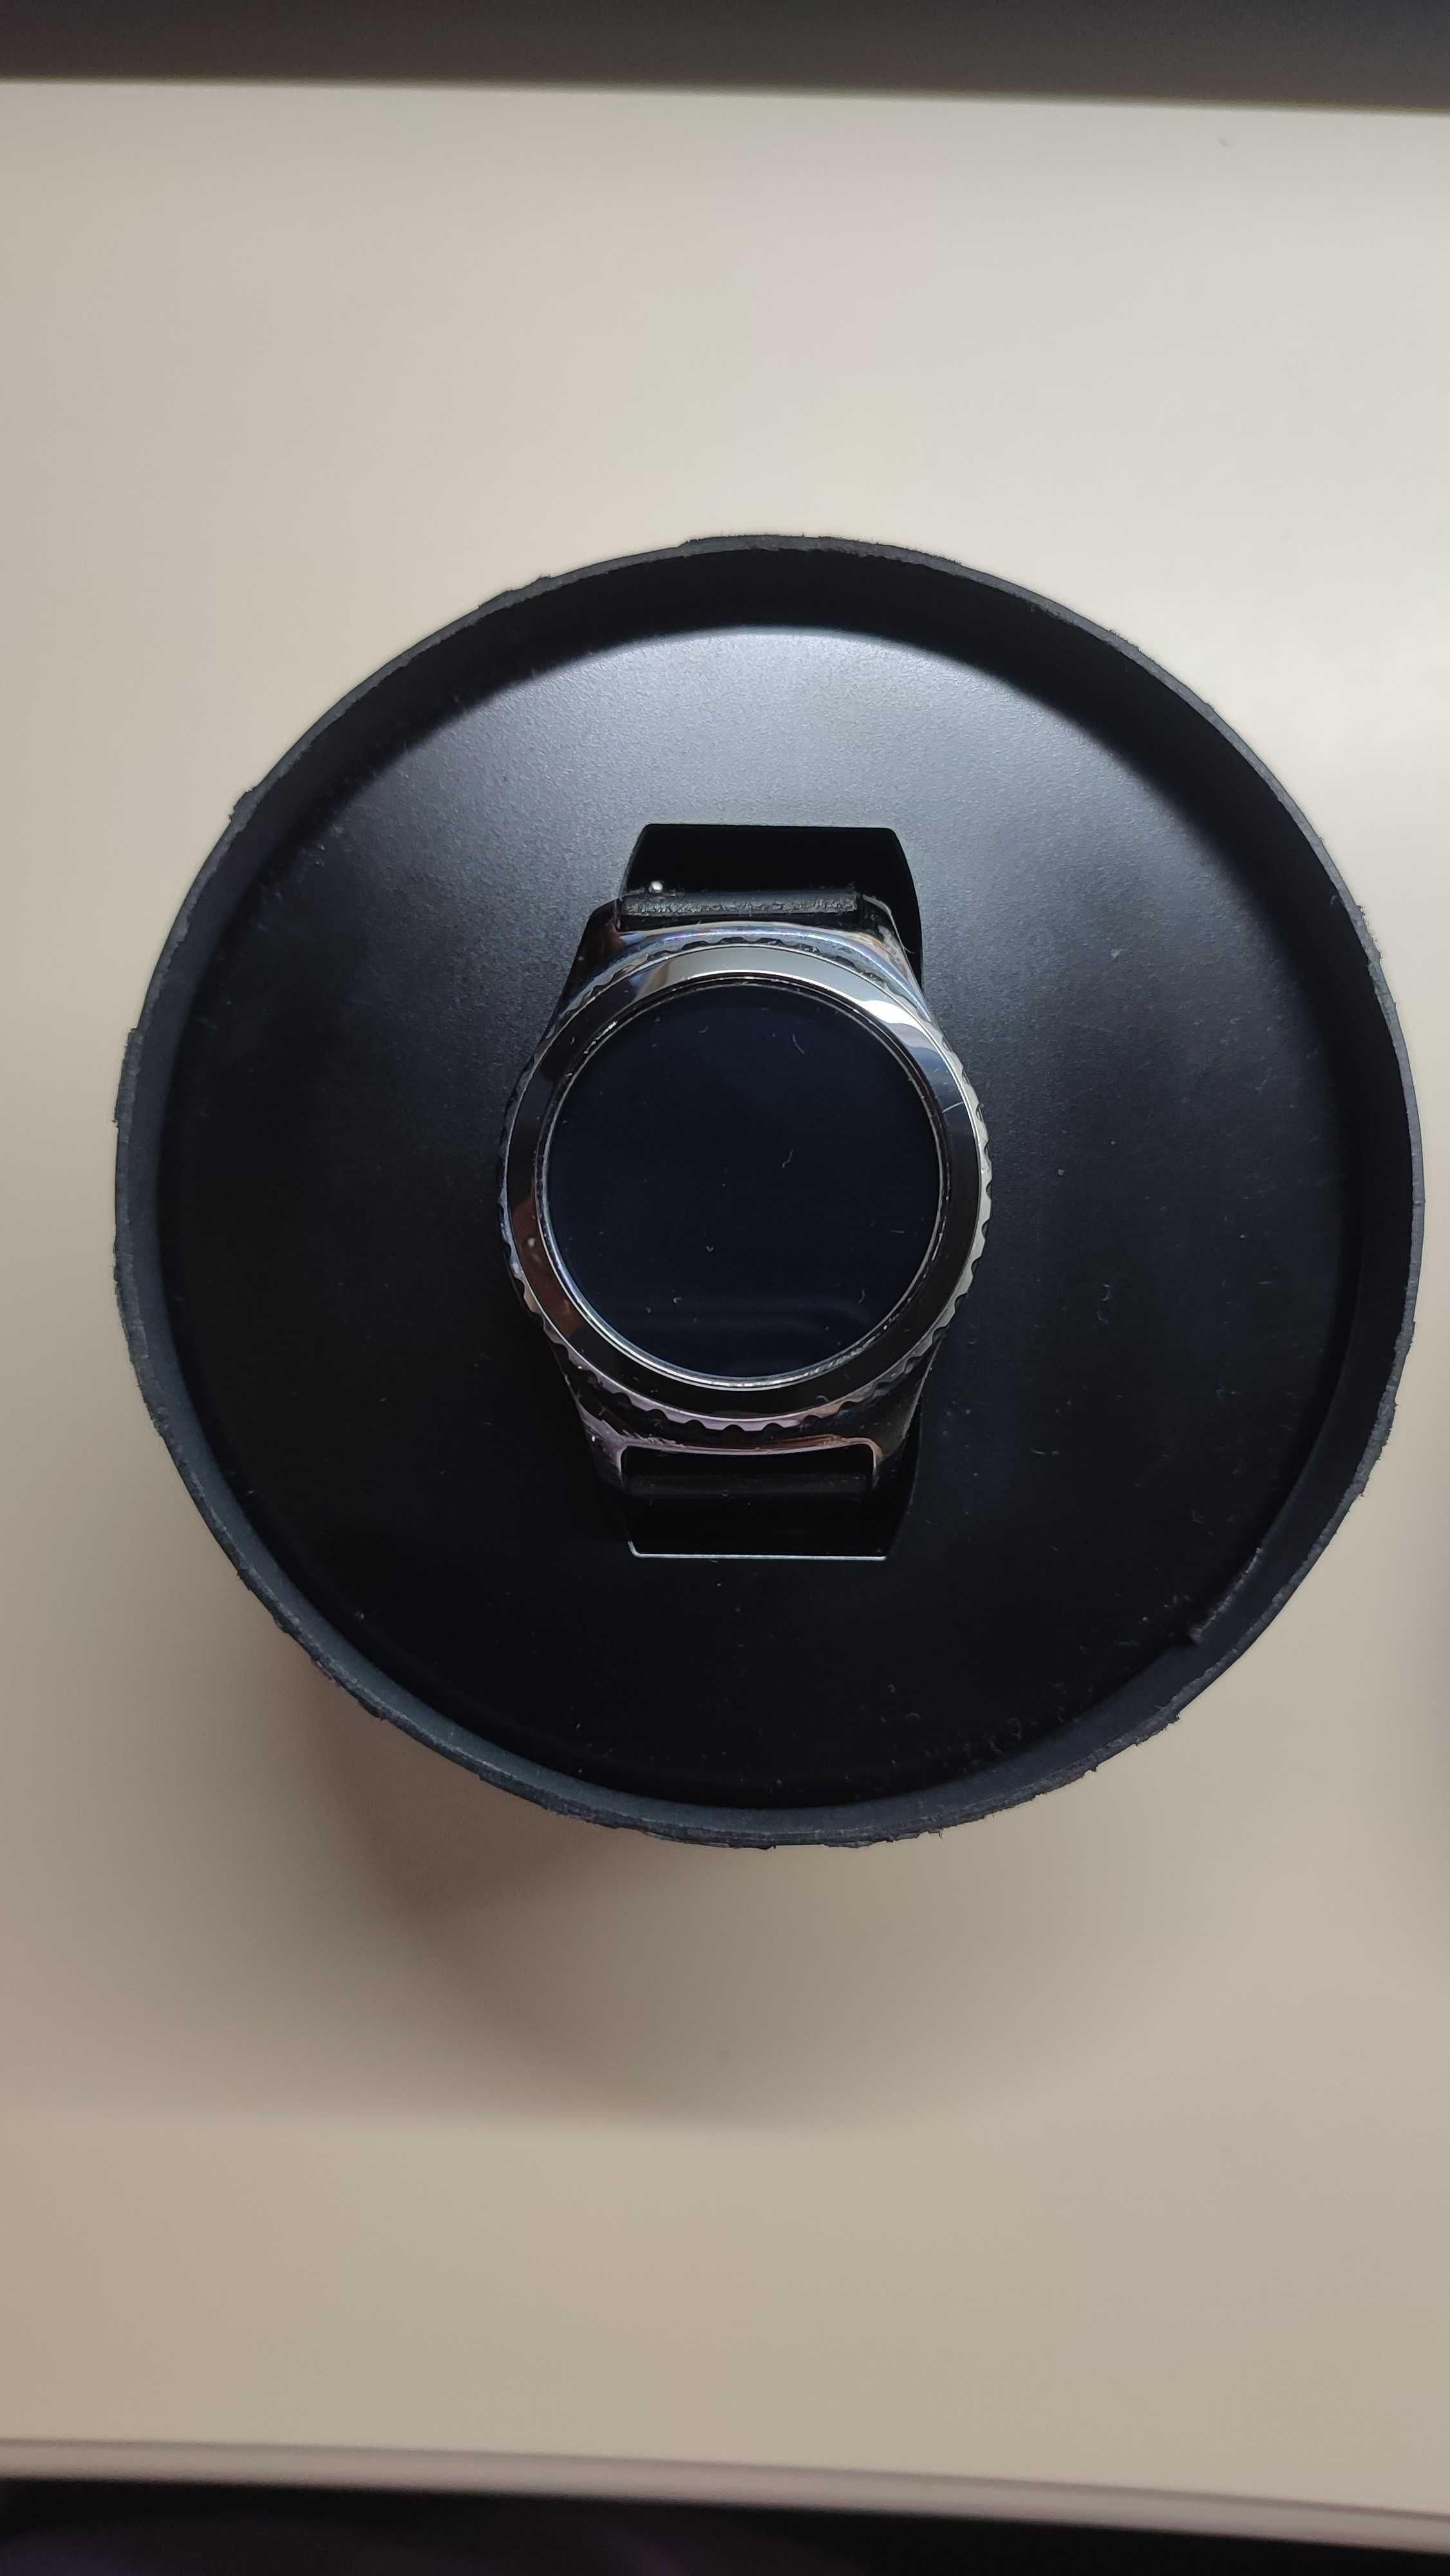 смарт-часы samsung gear s2 classic черные в рабочем состоянии